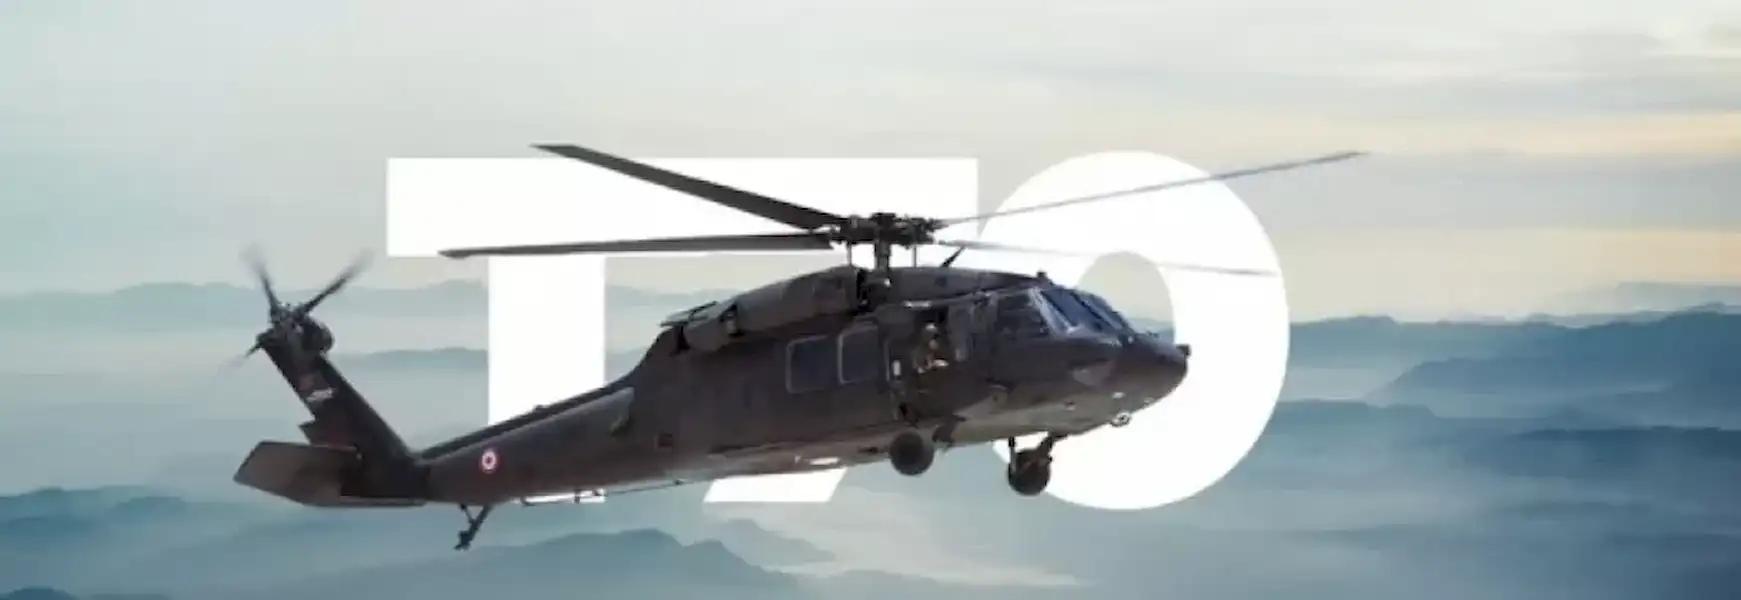 t70-tipi-helikopter-detay.webp